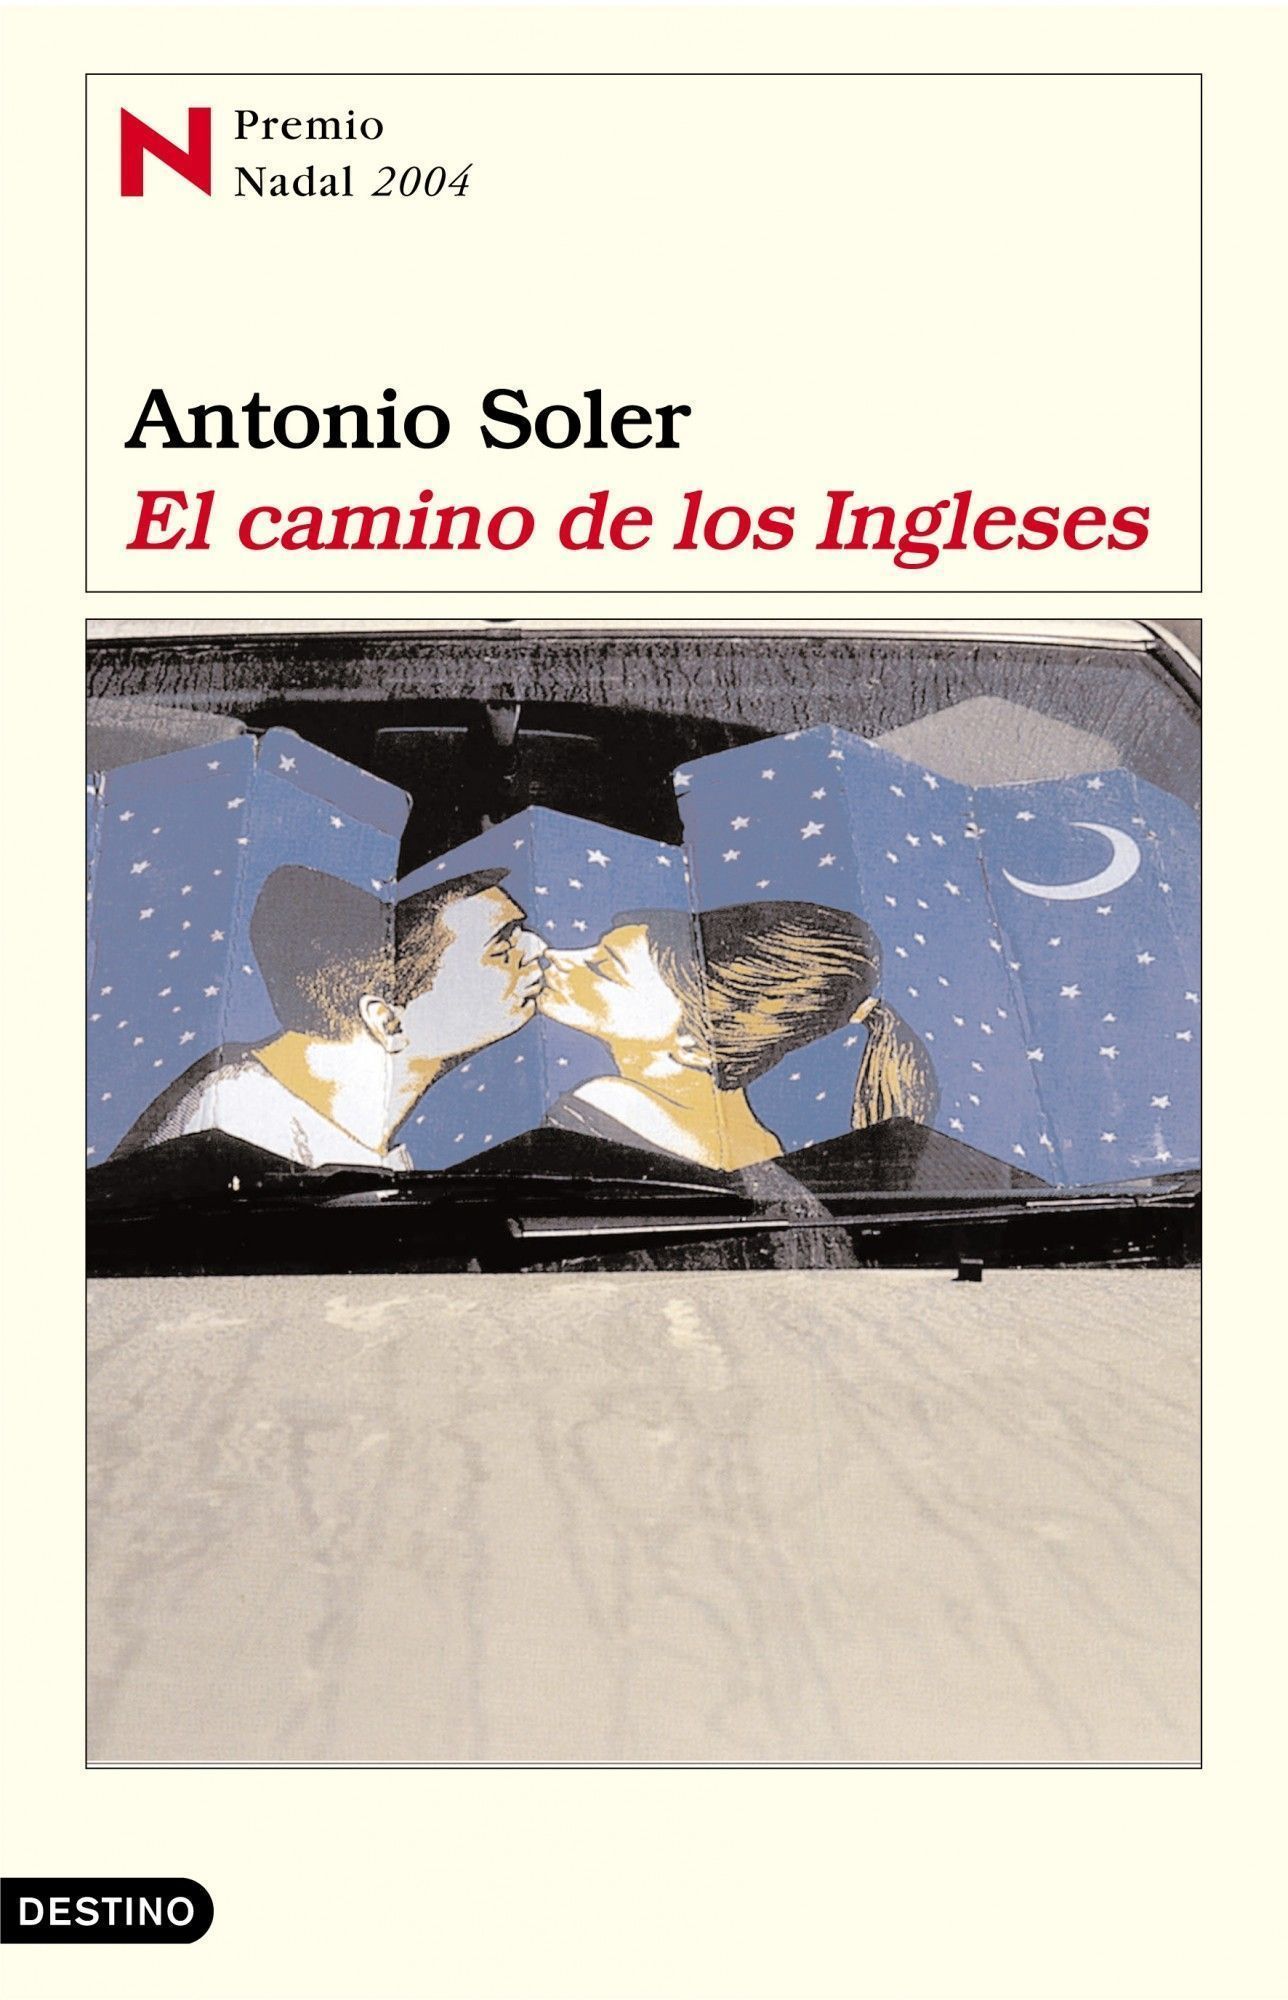 Antonio Soler, el último verano de nuestra juventud